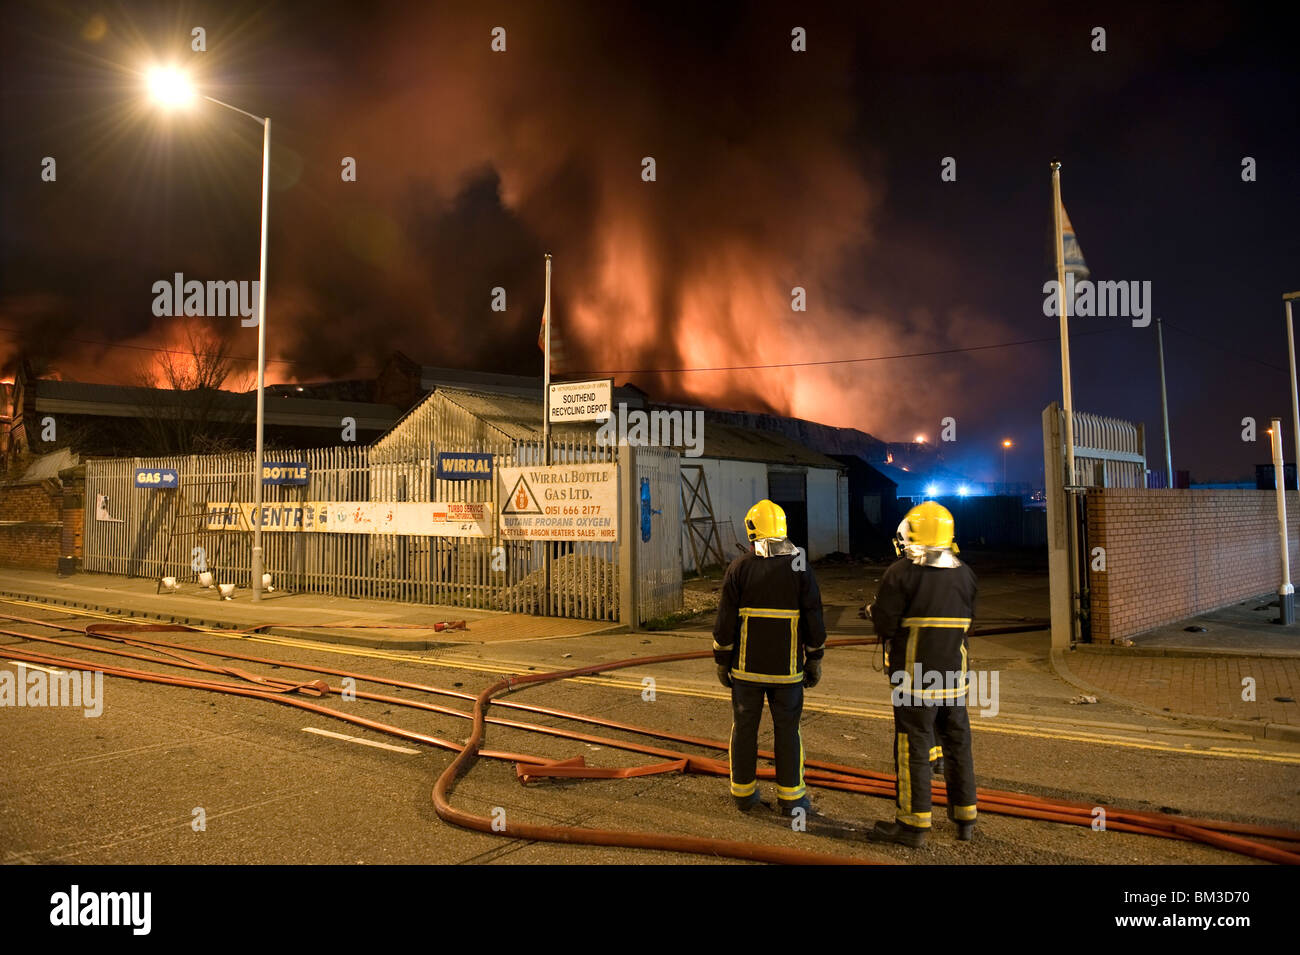 Grande magazzino di fabbrica sul fuoco di notte con un sacco di fiamme e fumo Foto Stock